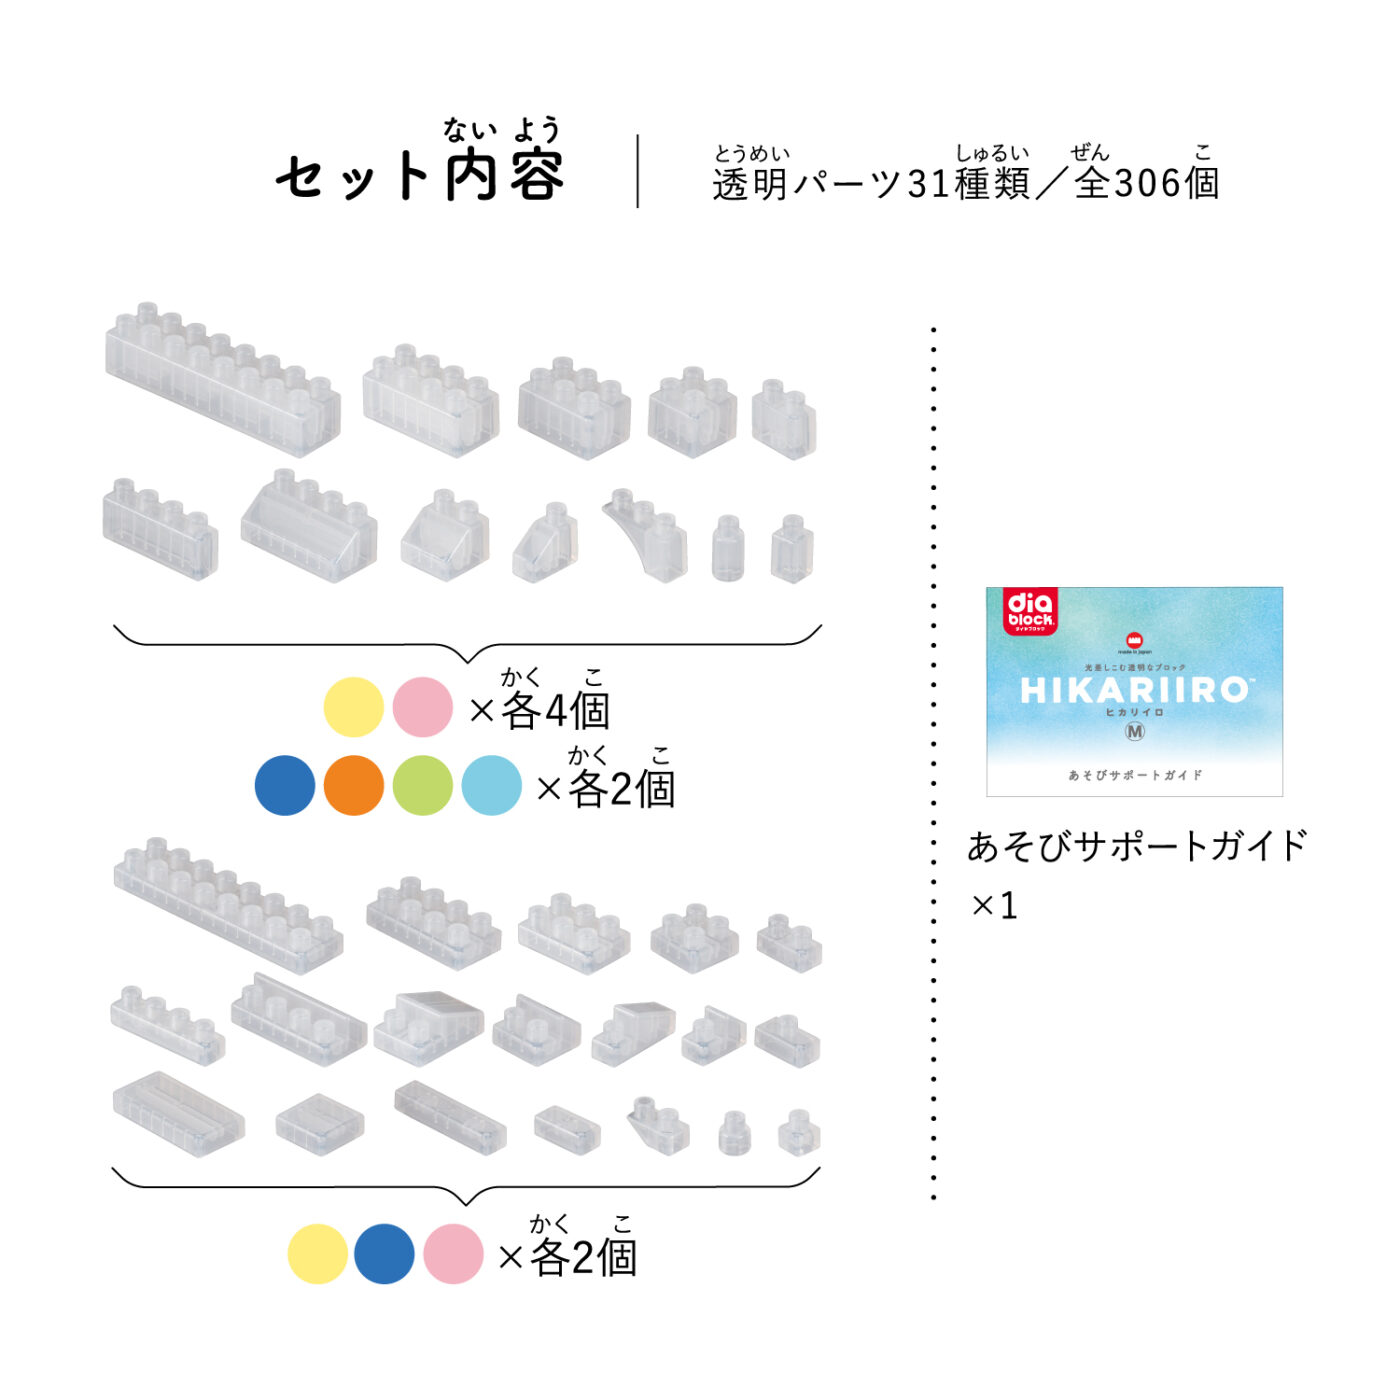 ダイヤブロック HIKARIIRO(ヒカリイロ) Mの商品画像3